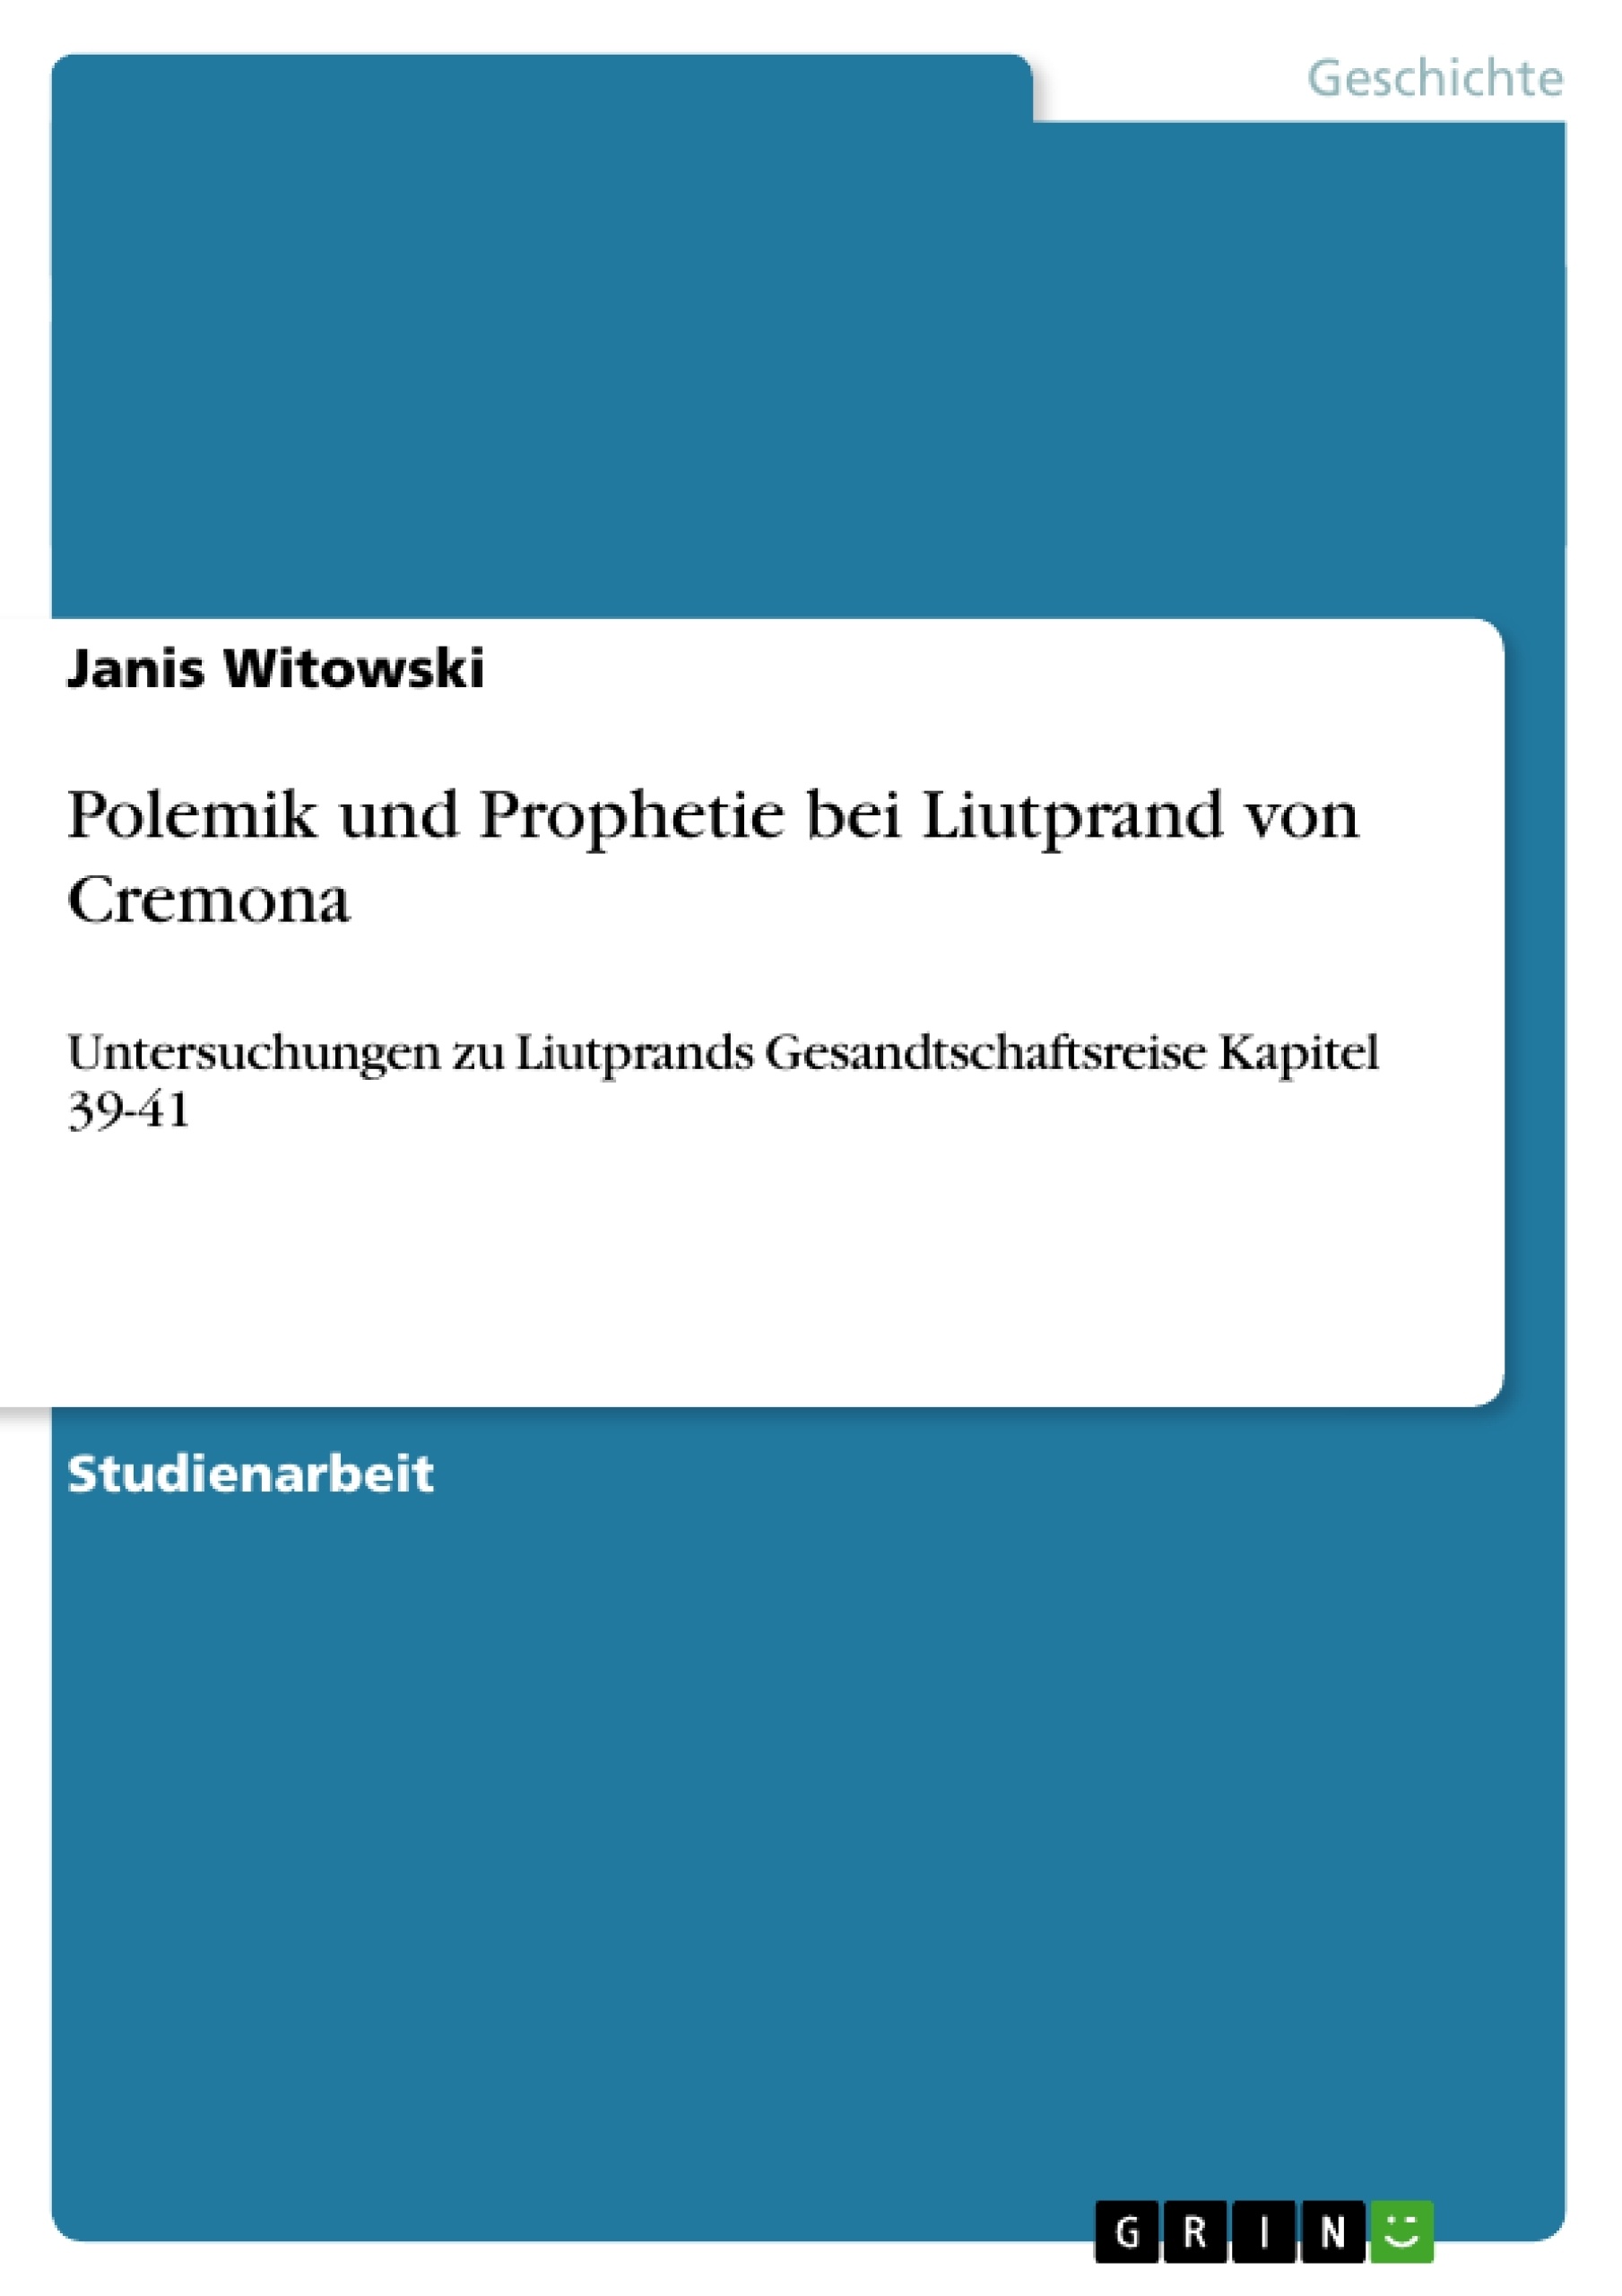 Title: Polemik und Prophetie bei Liutprand von Cremona